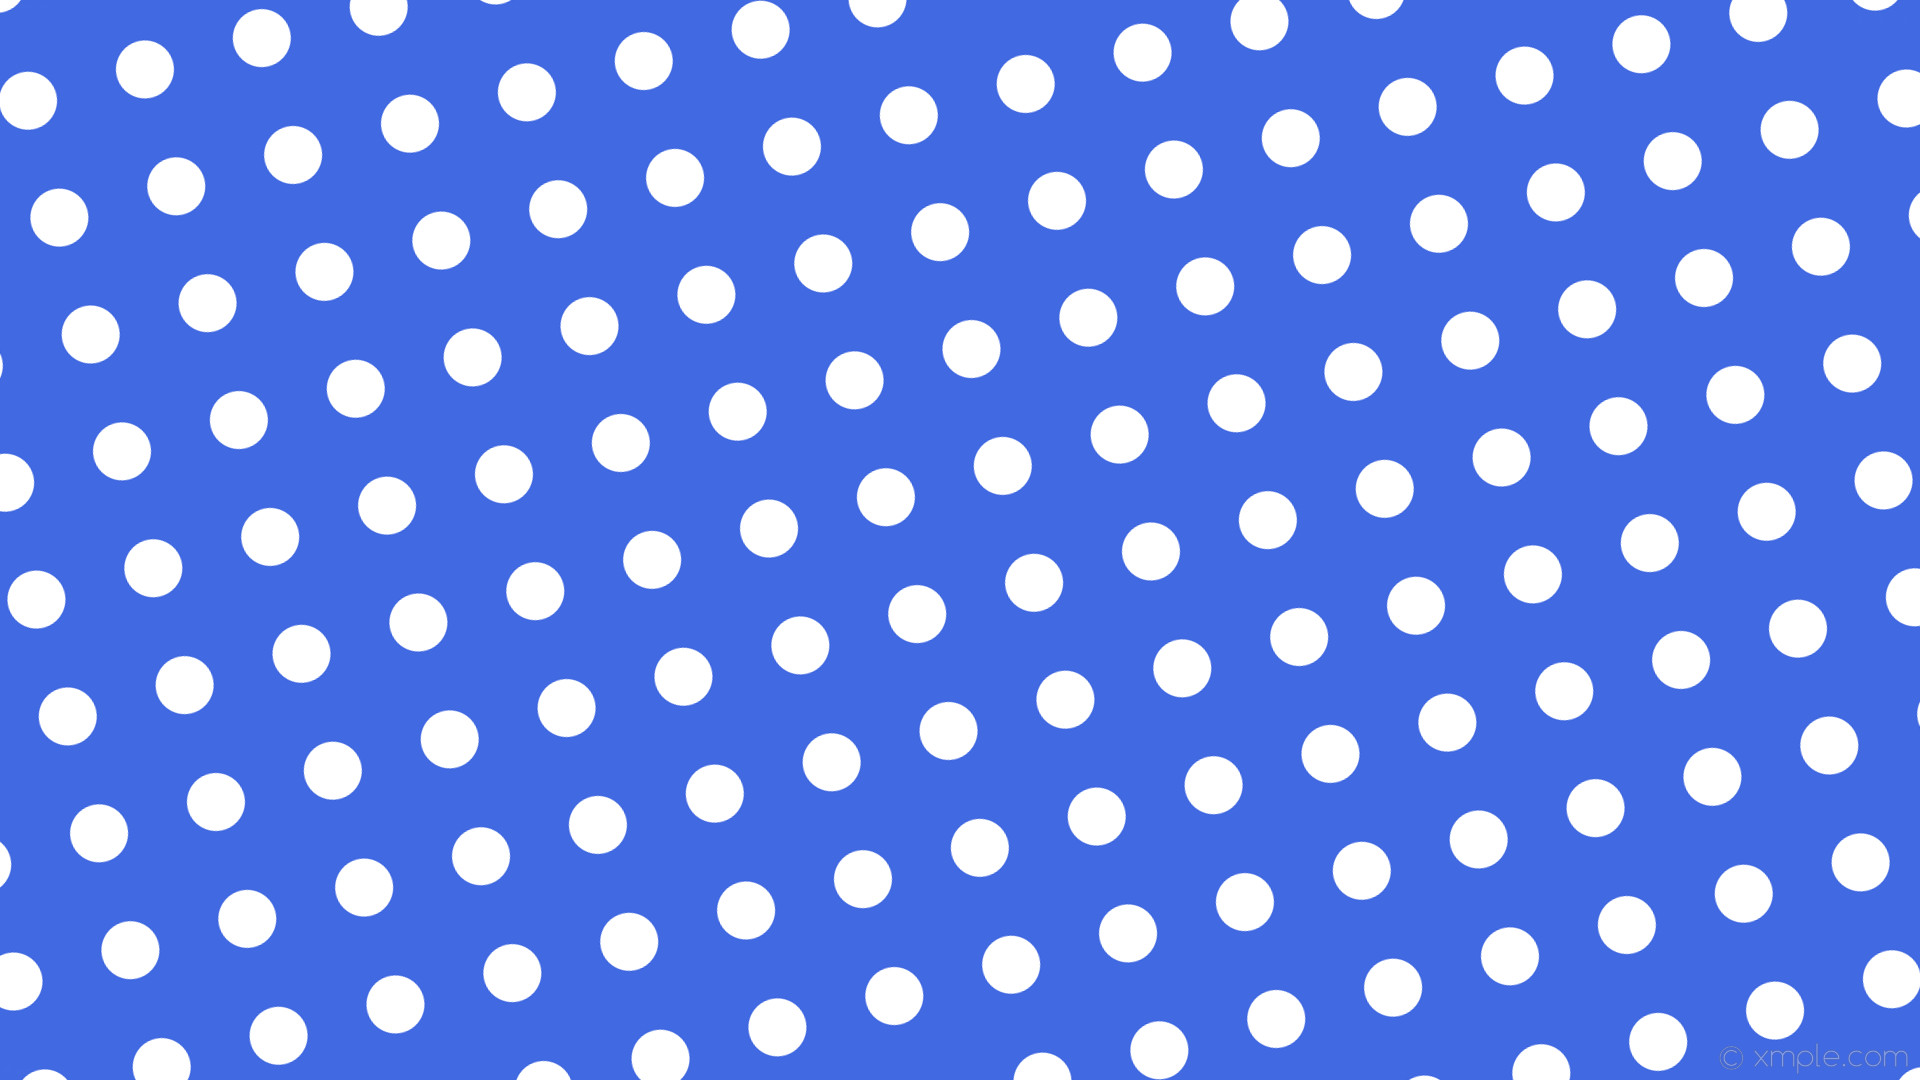 wallpaper blue polka dots white spots royal blue #4169e1 #ffffff 195Â° 58px  121px